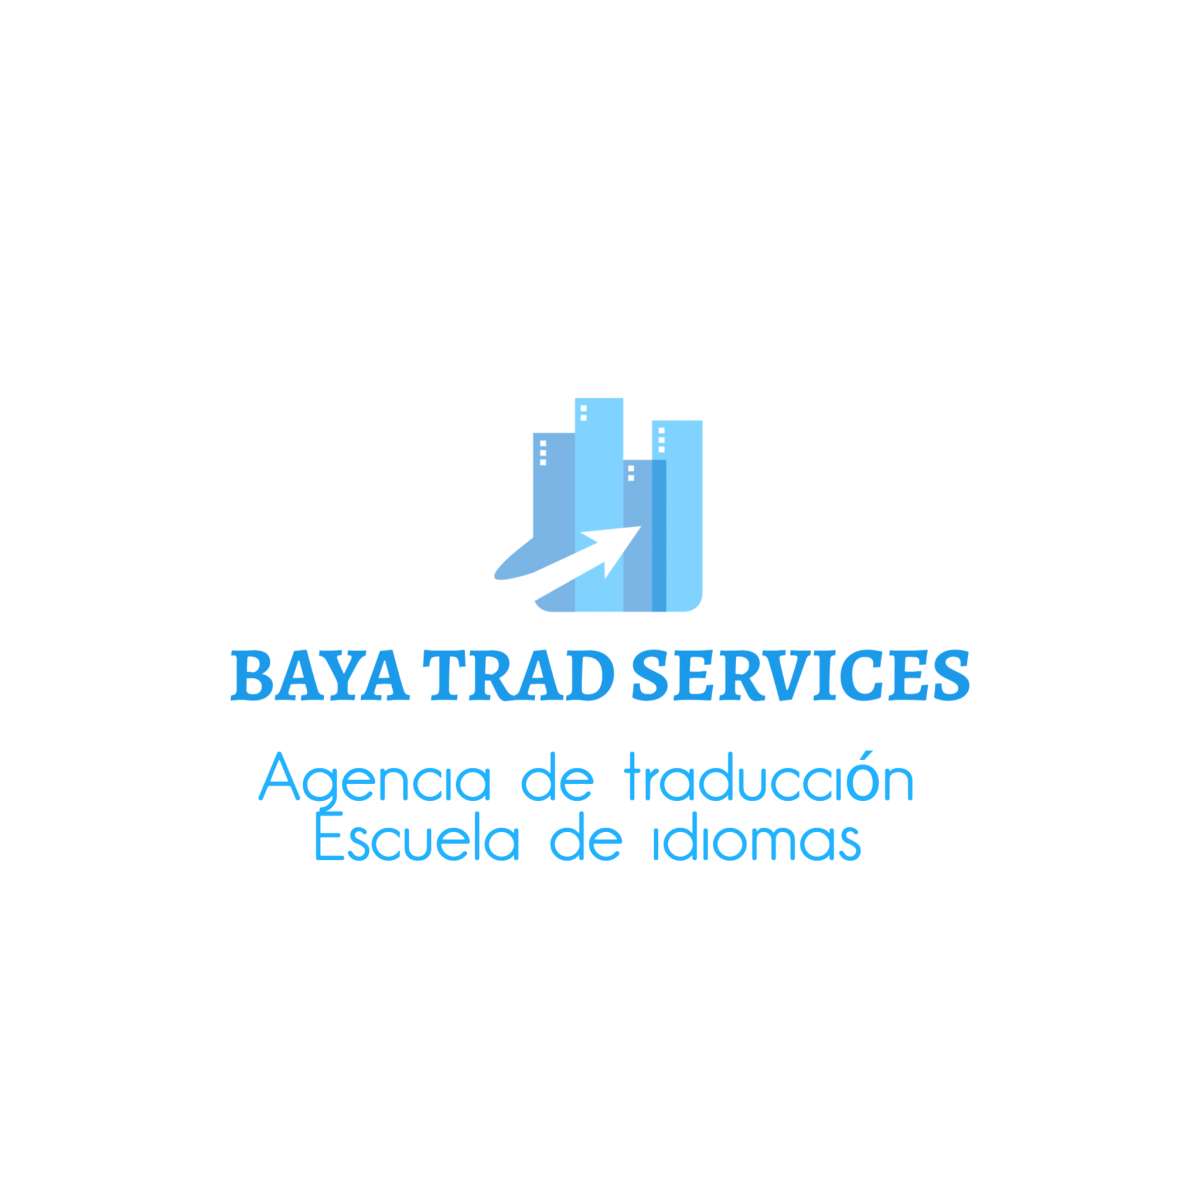 BAYA TRAD SERVICES - Alcalá de Henares - Traducciones del noruego